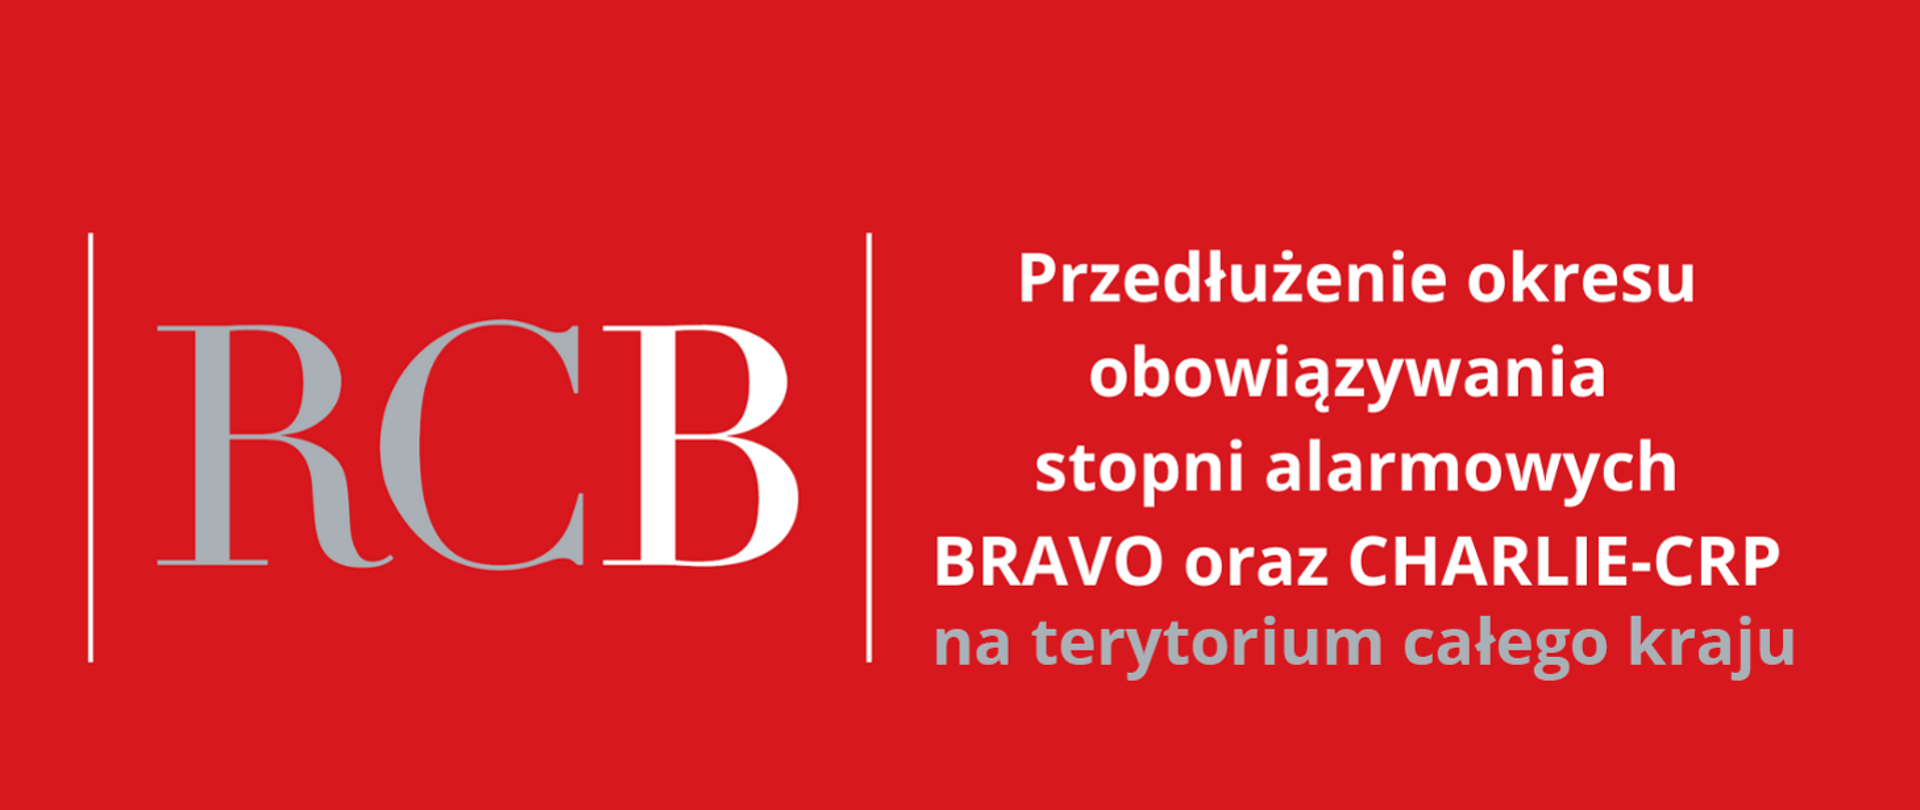 Na czerwonym tle po lewej stronie drukowanymi literami RCB, a po prawej napis Przedłużenie okresu obowiązzywania stopni alarmowych BRAVO oraz CHARLIE-CRP na tertorium całego kraju.